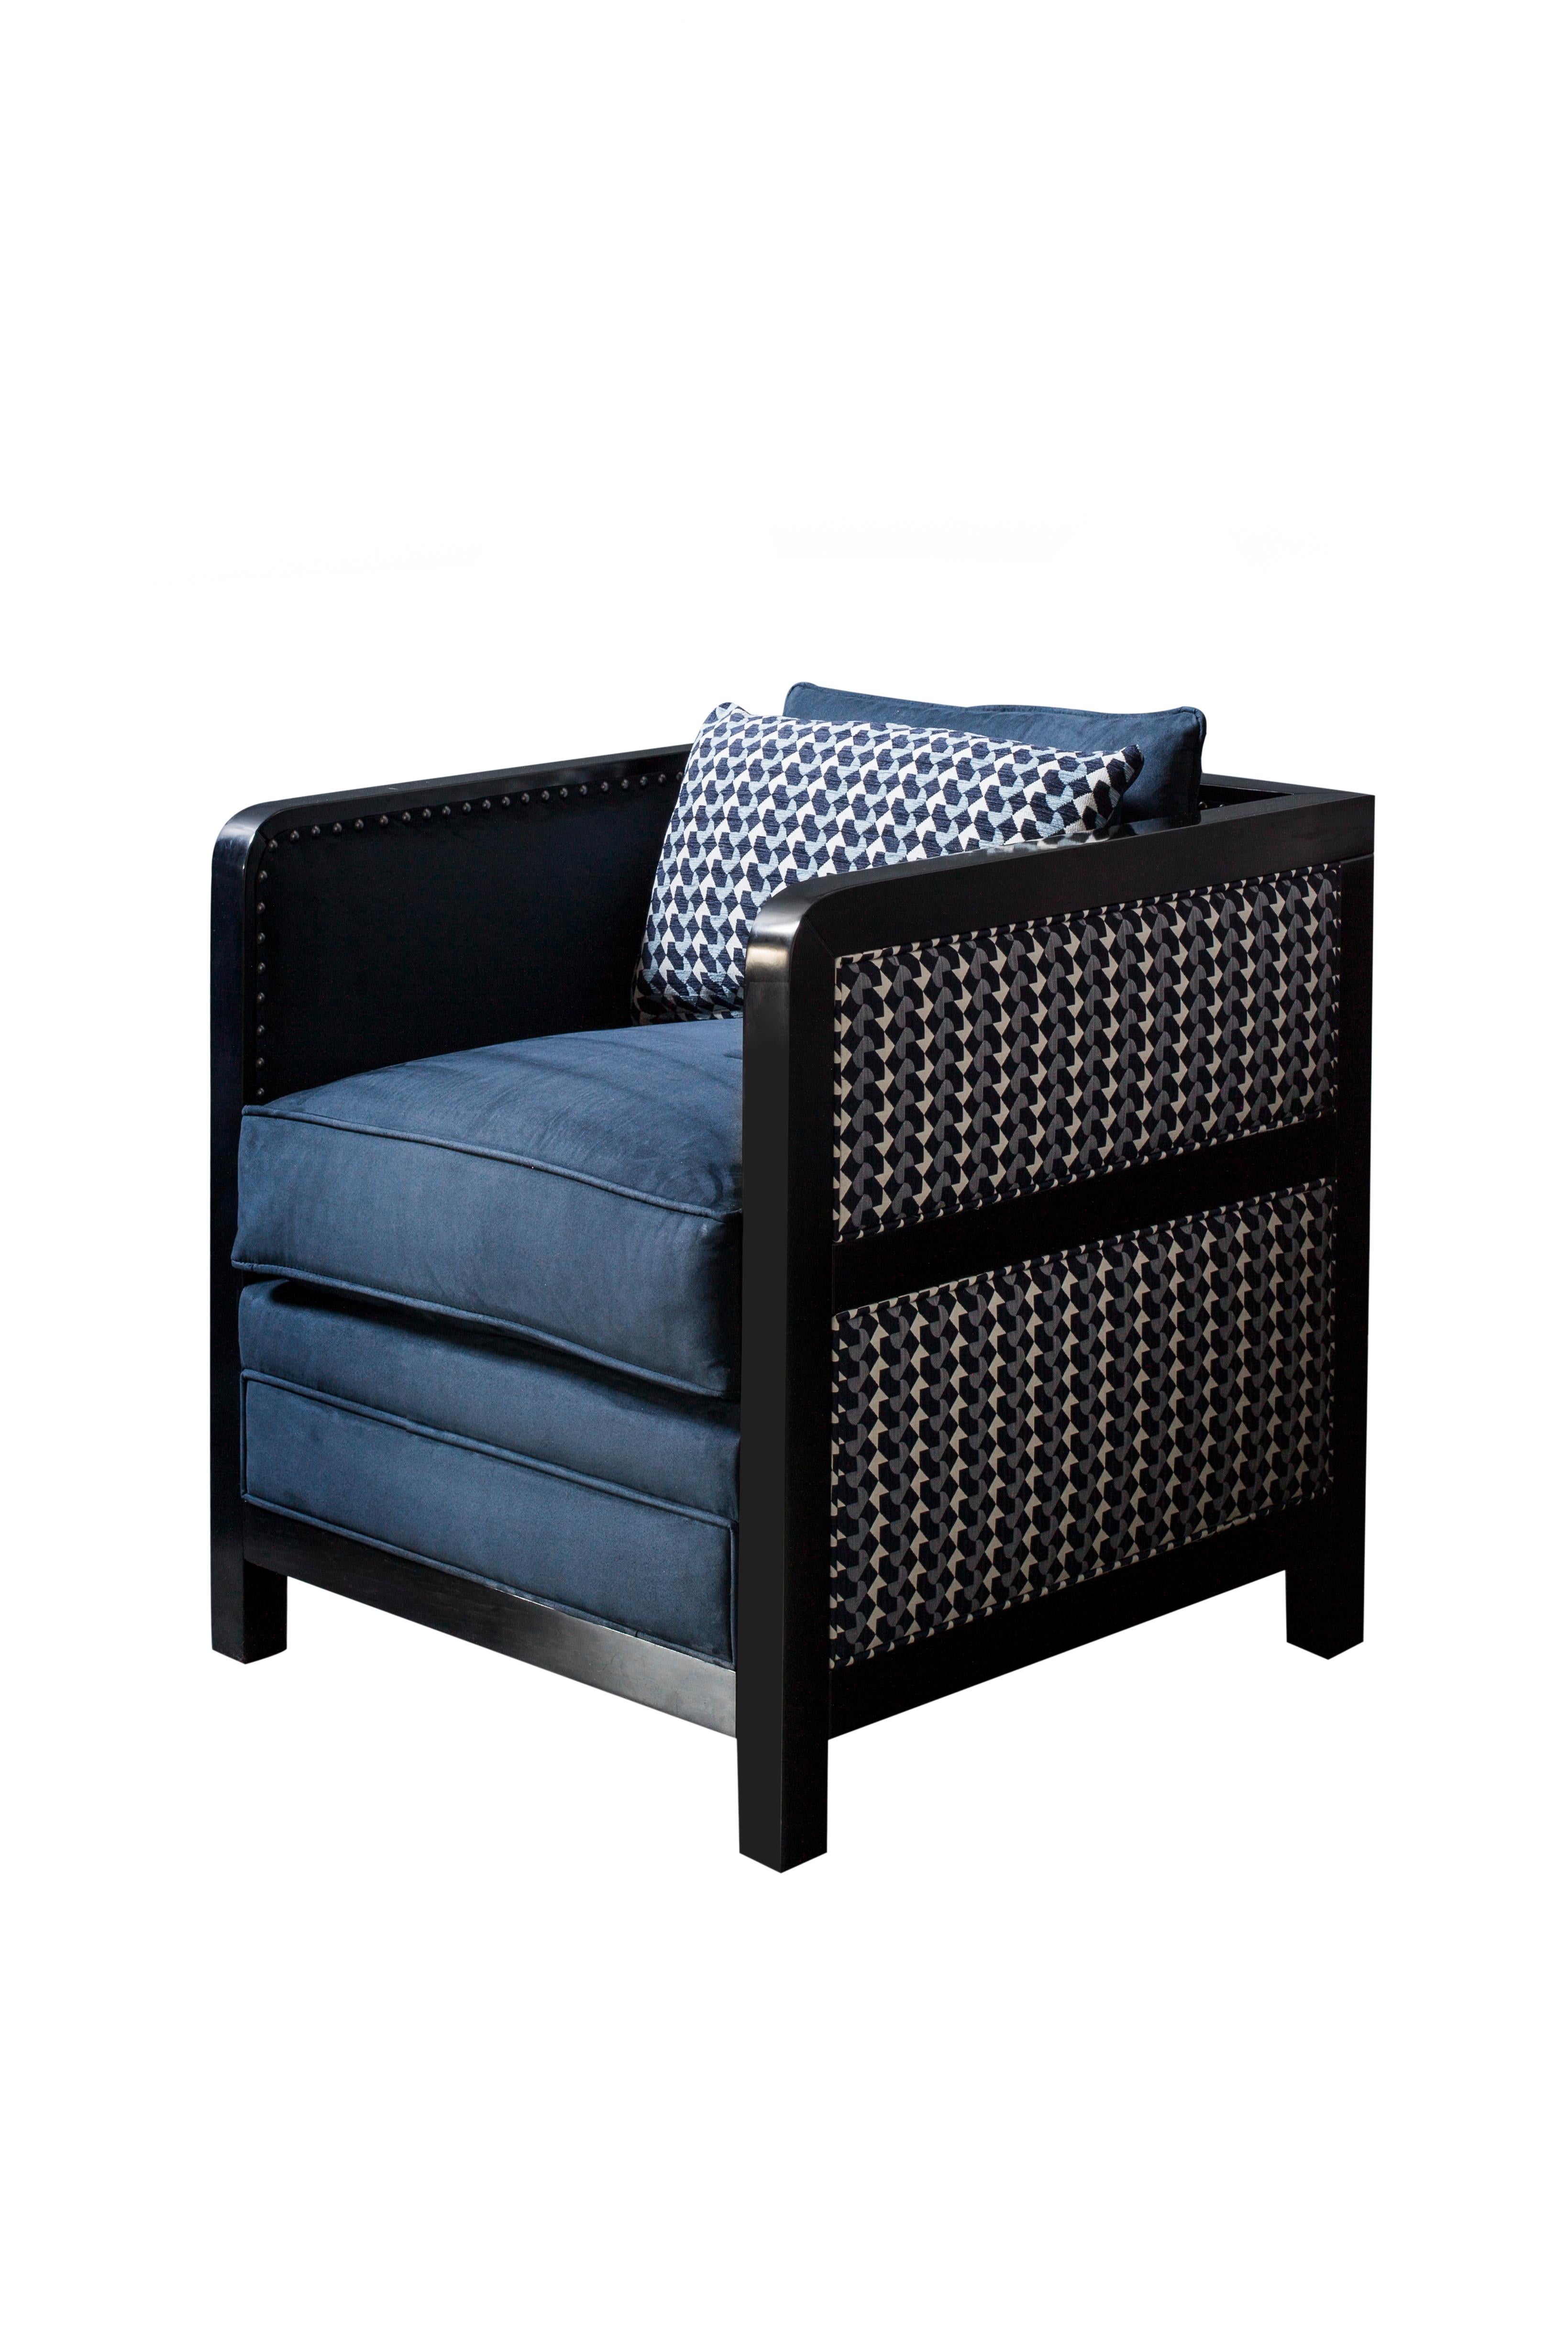 Der Sessel Bacco ist eine zeitgemäße Neuinterpretation des kultigen Kastenstuhls, der sich hervorragend für die Lounge eignet.

Der dekonstruierte Sessel Boxy Bacco, der die Grenzen des Designs auslotet und mit verschiedenen Texturen und Oberflächen